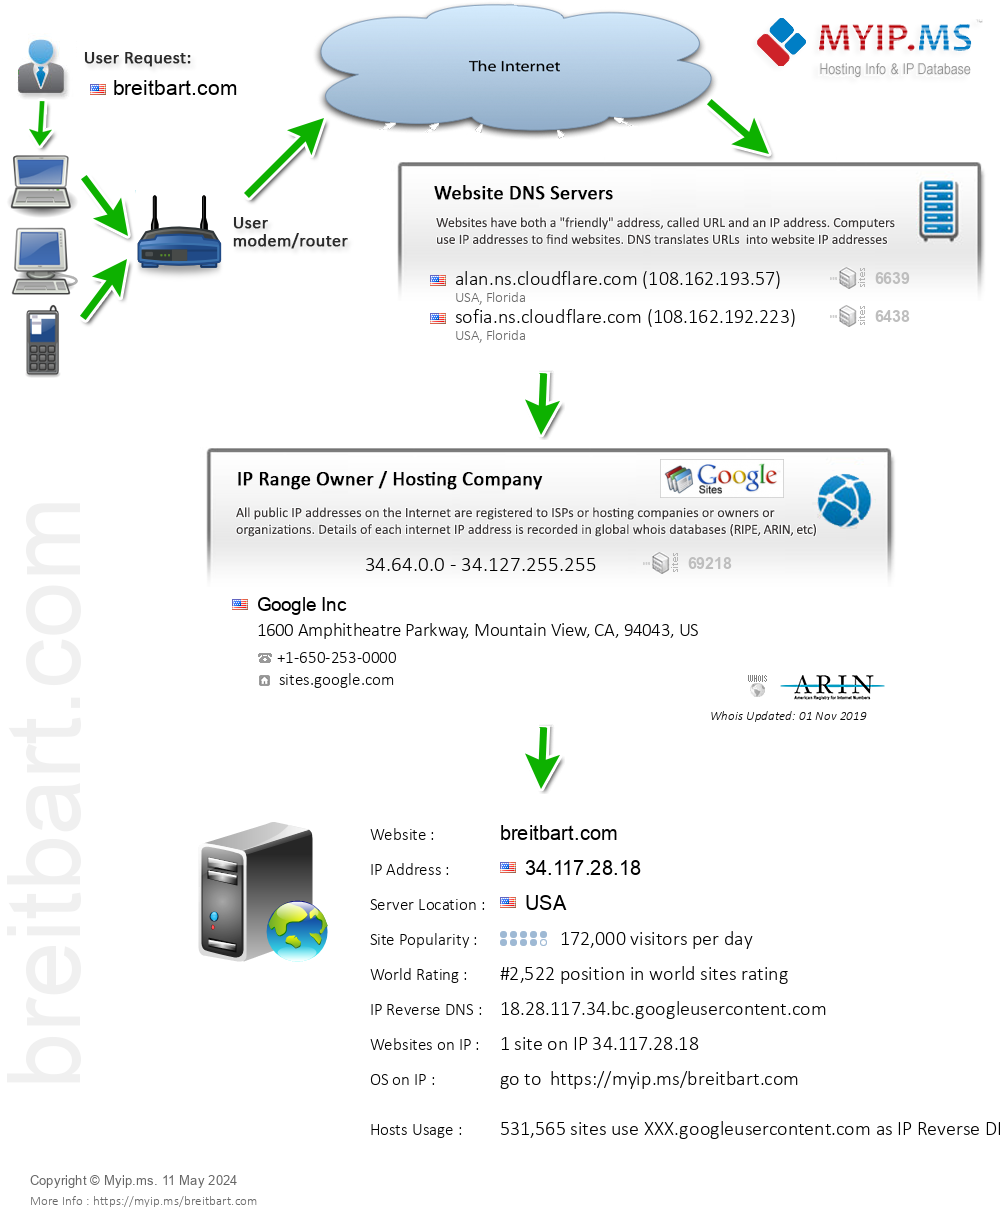 Breitbart.com - Website Hosting Visual IP Diagram